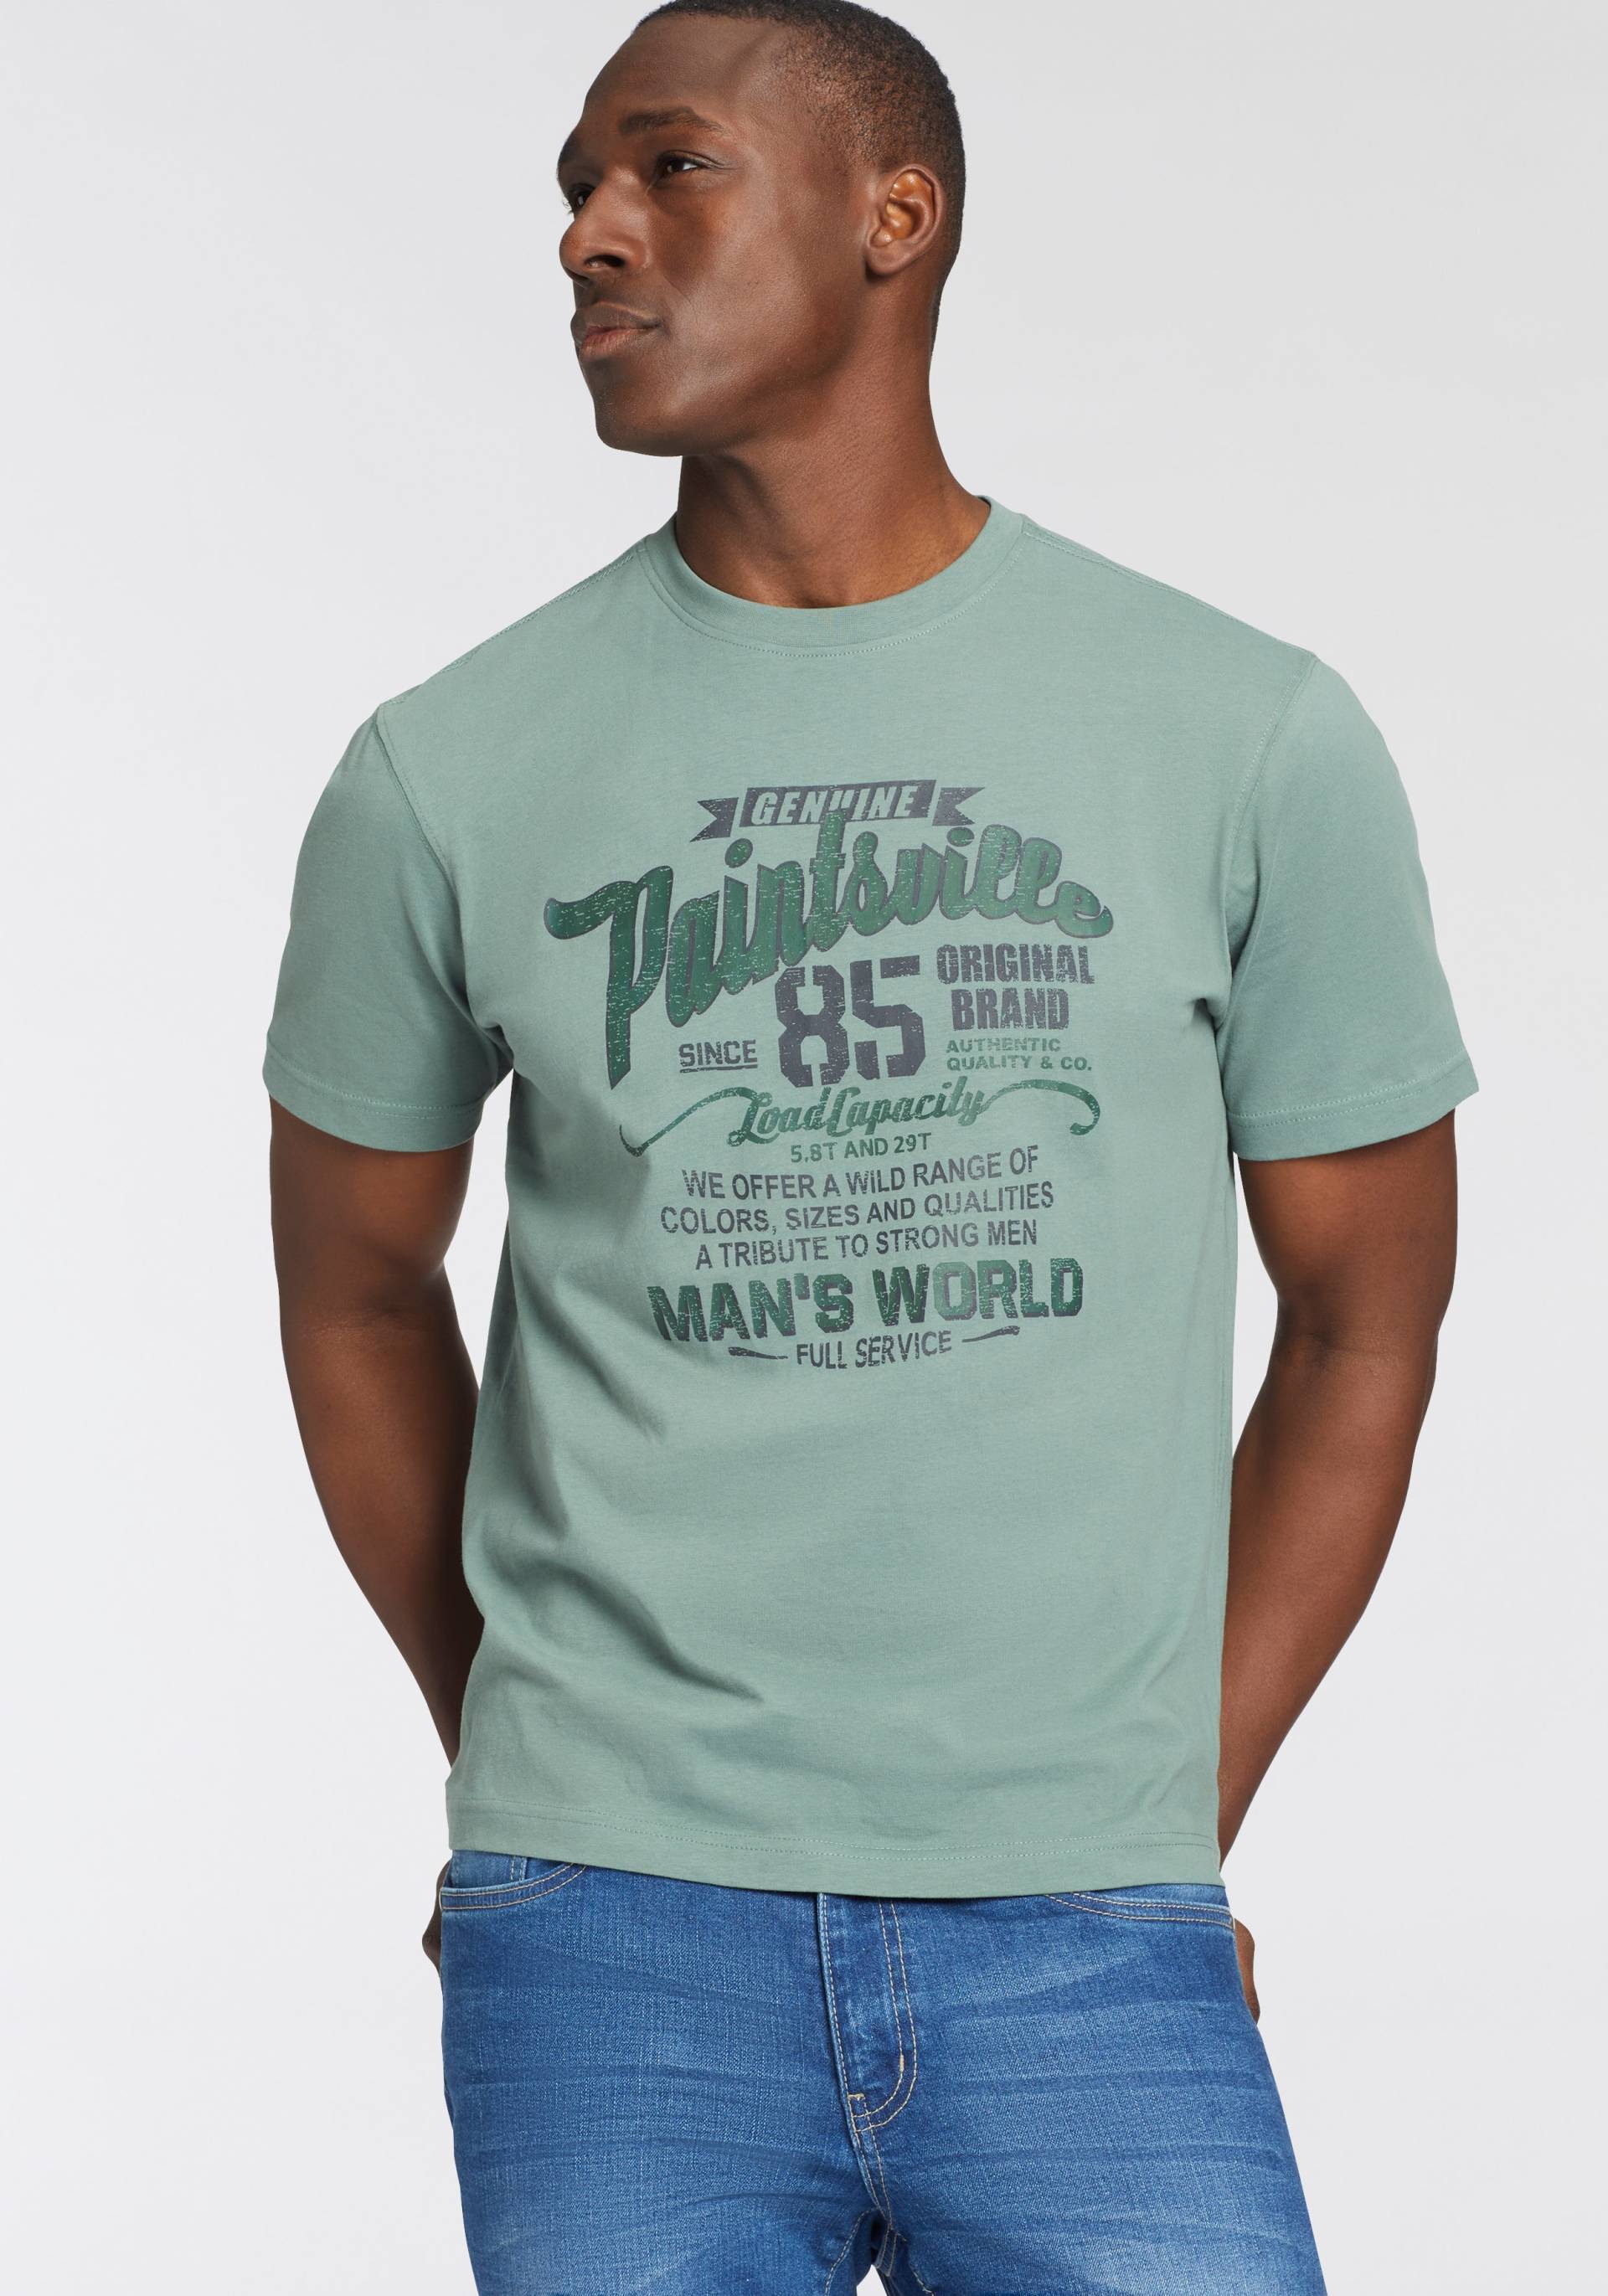 Man's World T-Shirt von Man's World